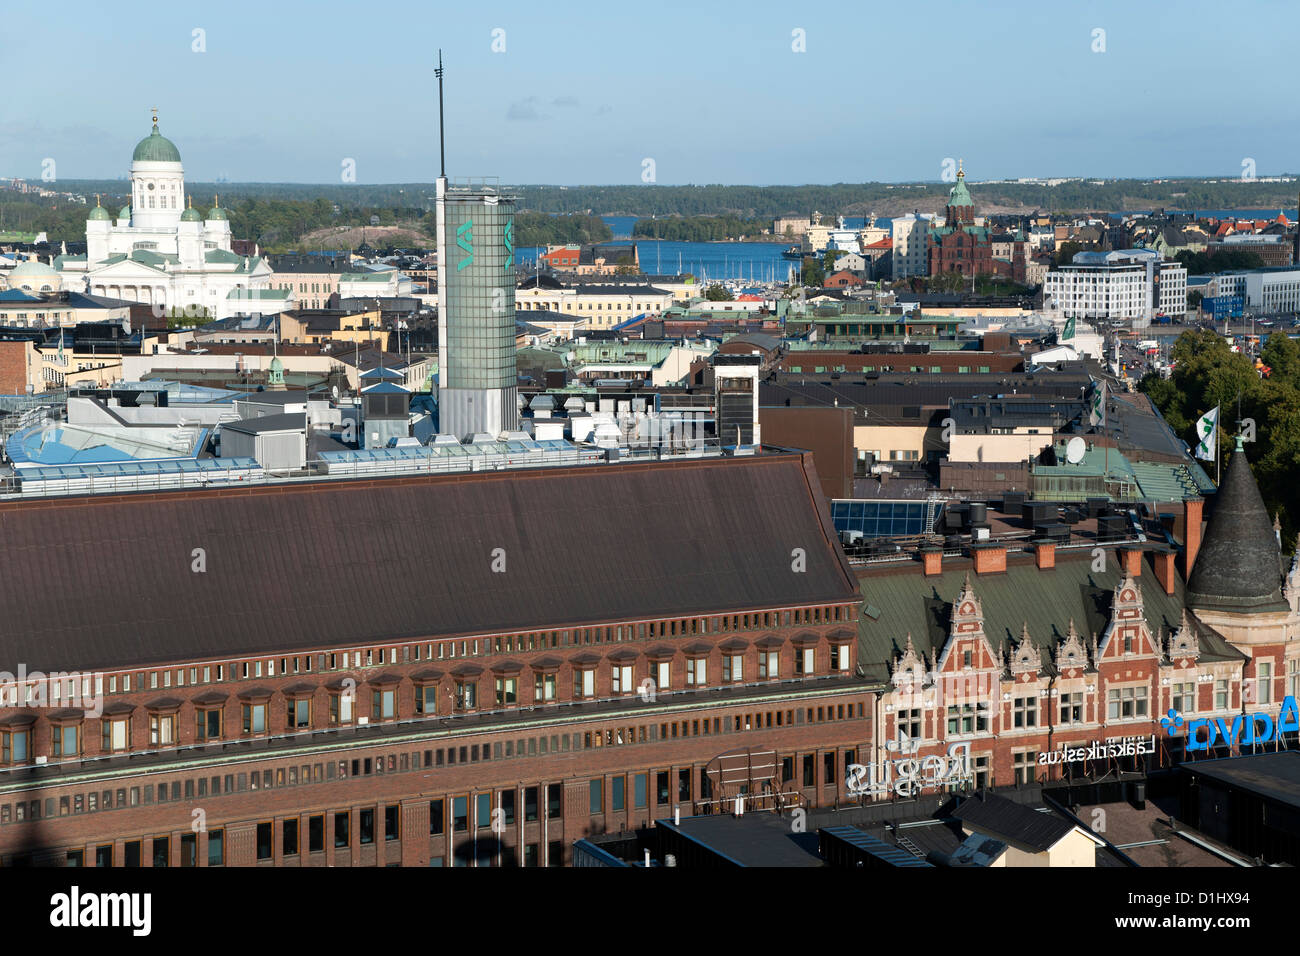 Vue vers l'est sur les toits d'Helsinki, la capitale de la Finlande. Prise depuis le sommet de l'hôtel Torni. Banque D'Images